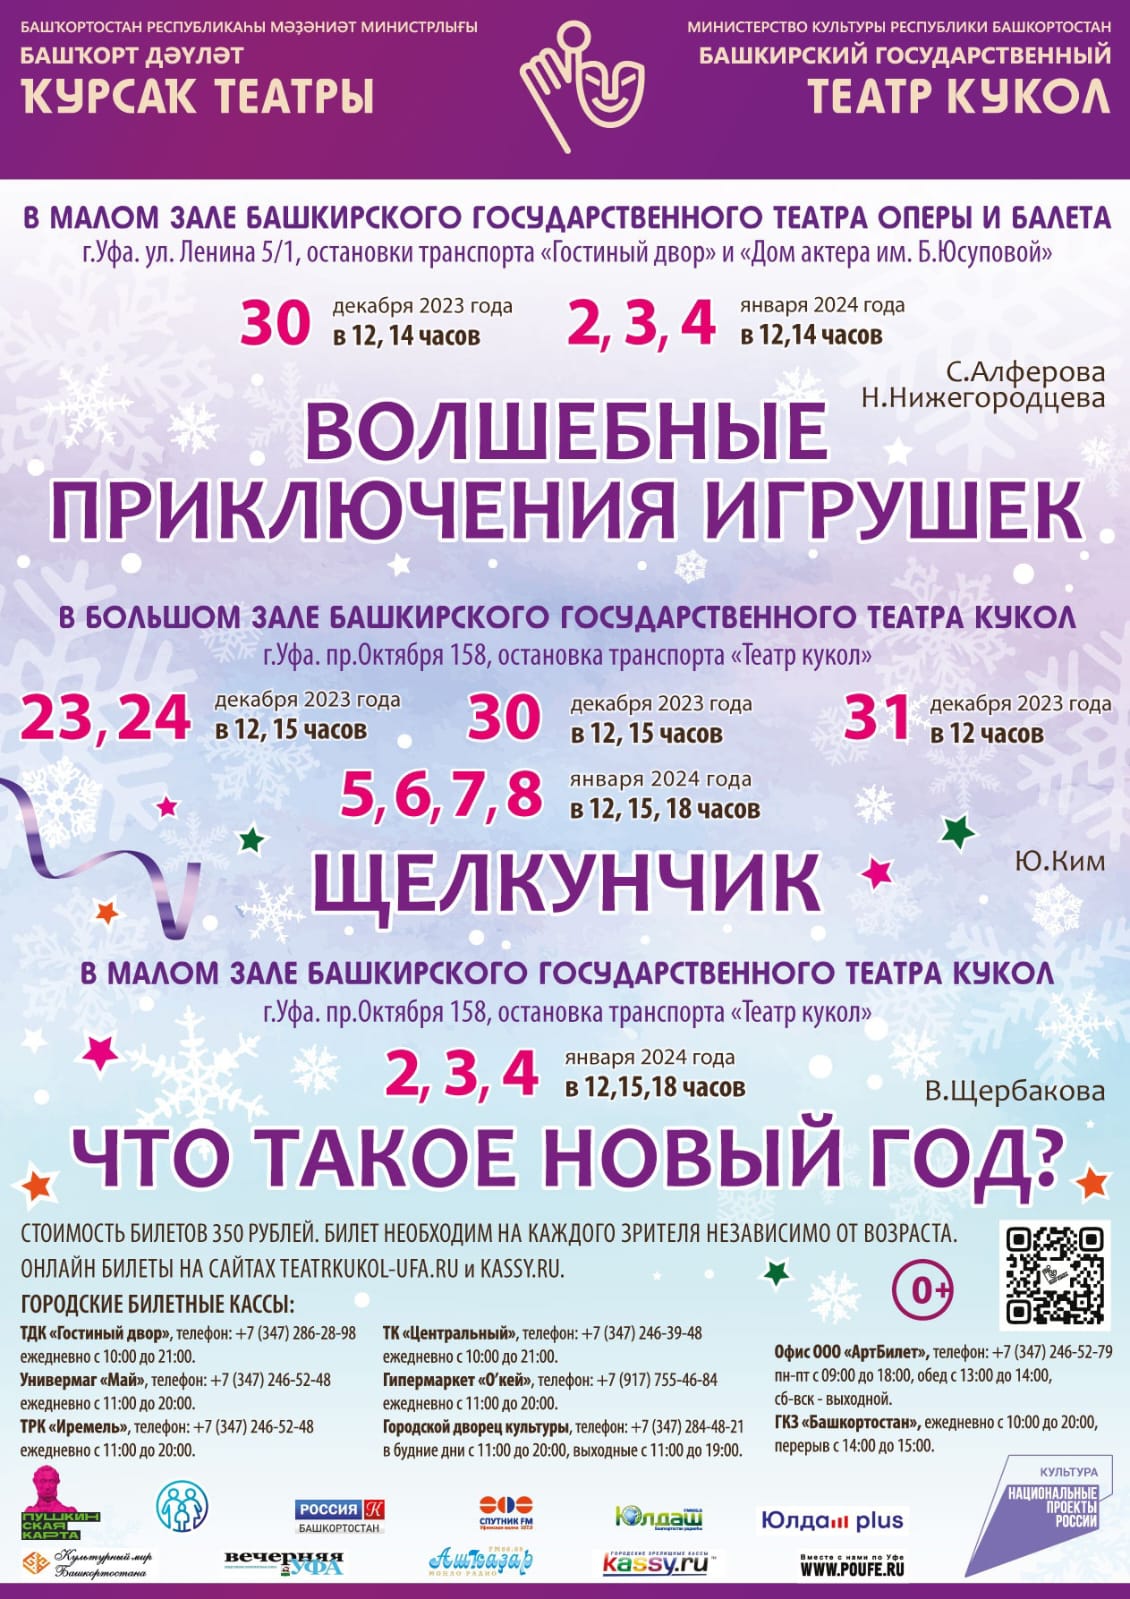 Репертуарный план Башкирского государственного театра кукол на декабрь 2023 г.